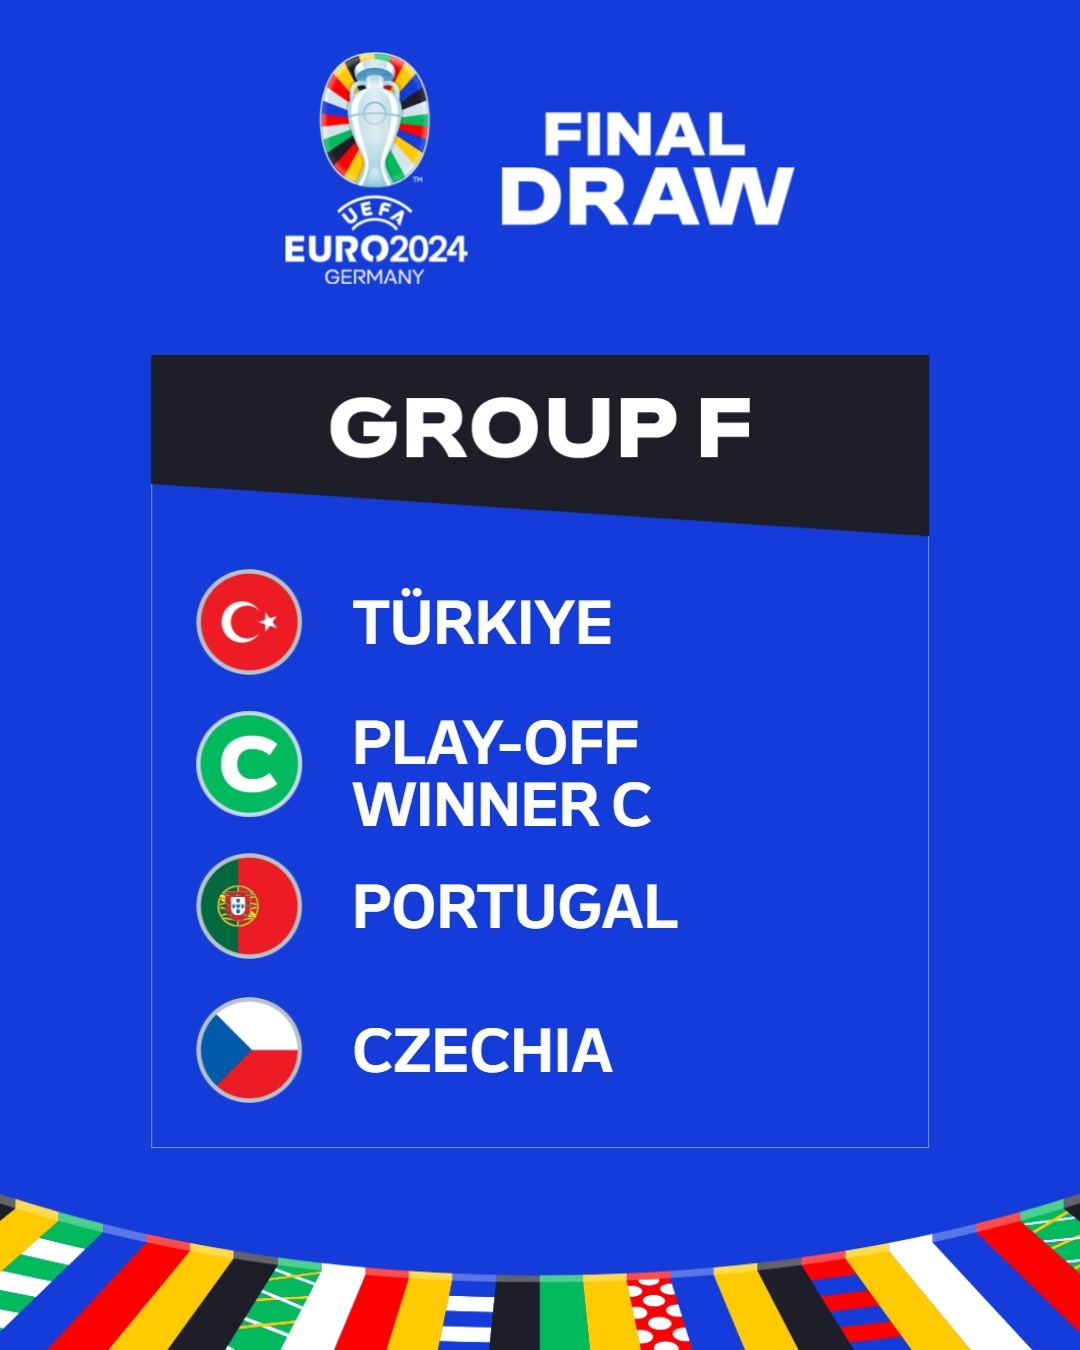 欧洲杯F组：土耳其、附加赛C组胜者、葡萄牙、捷克